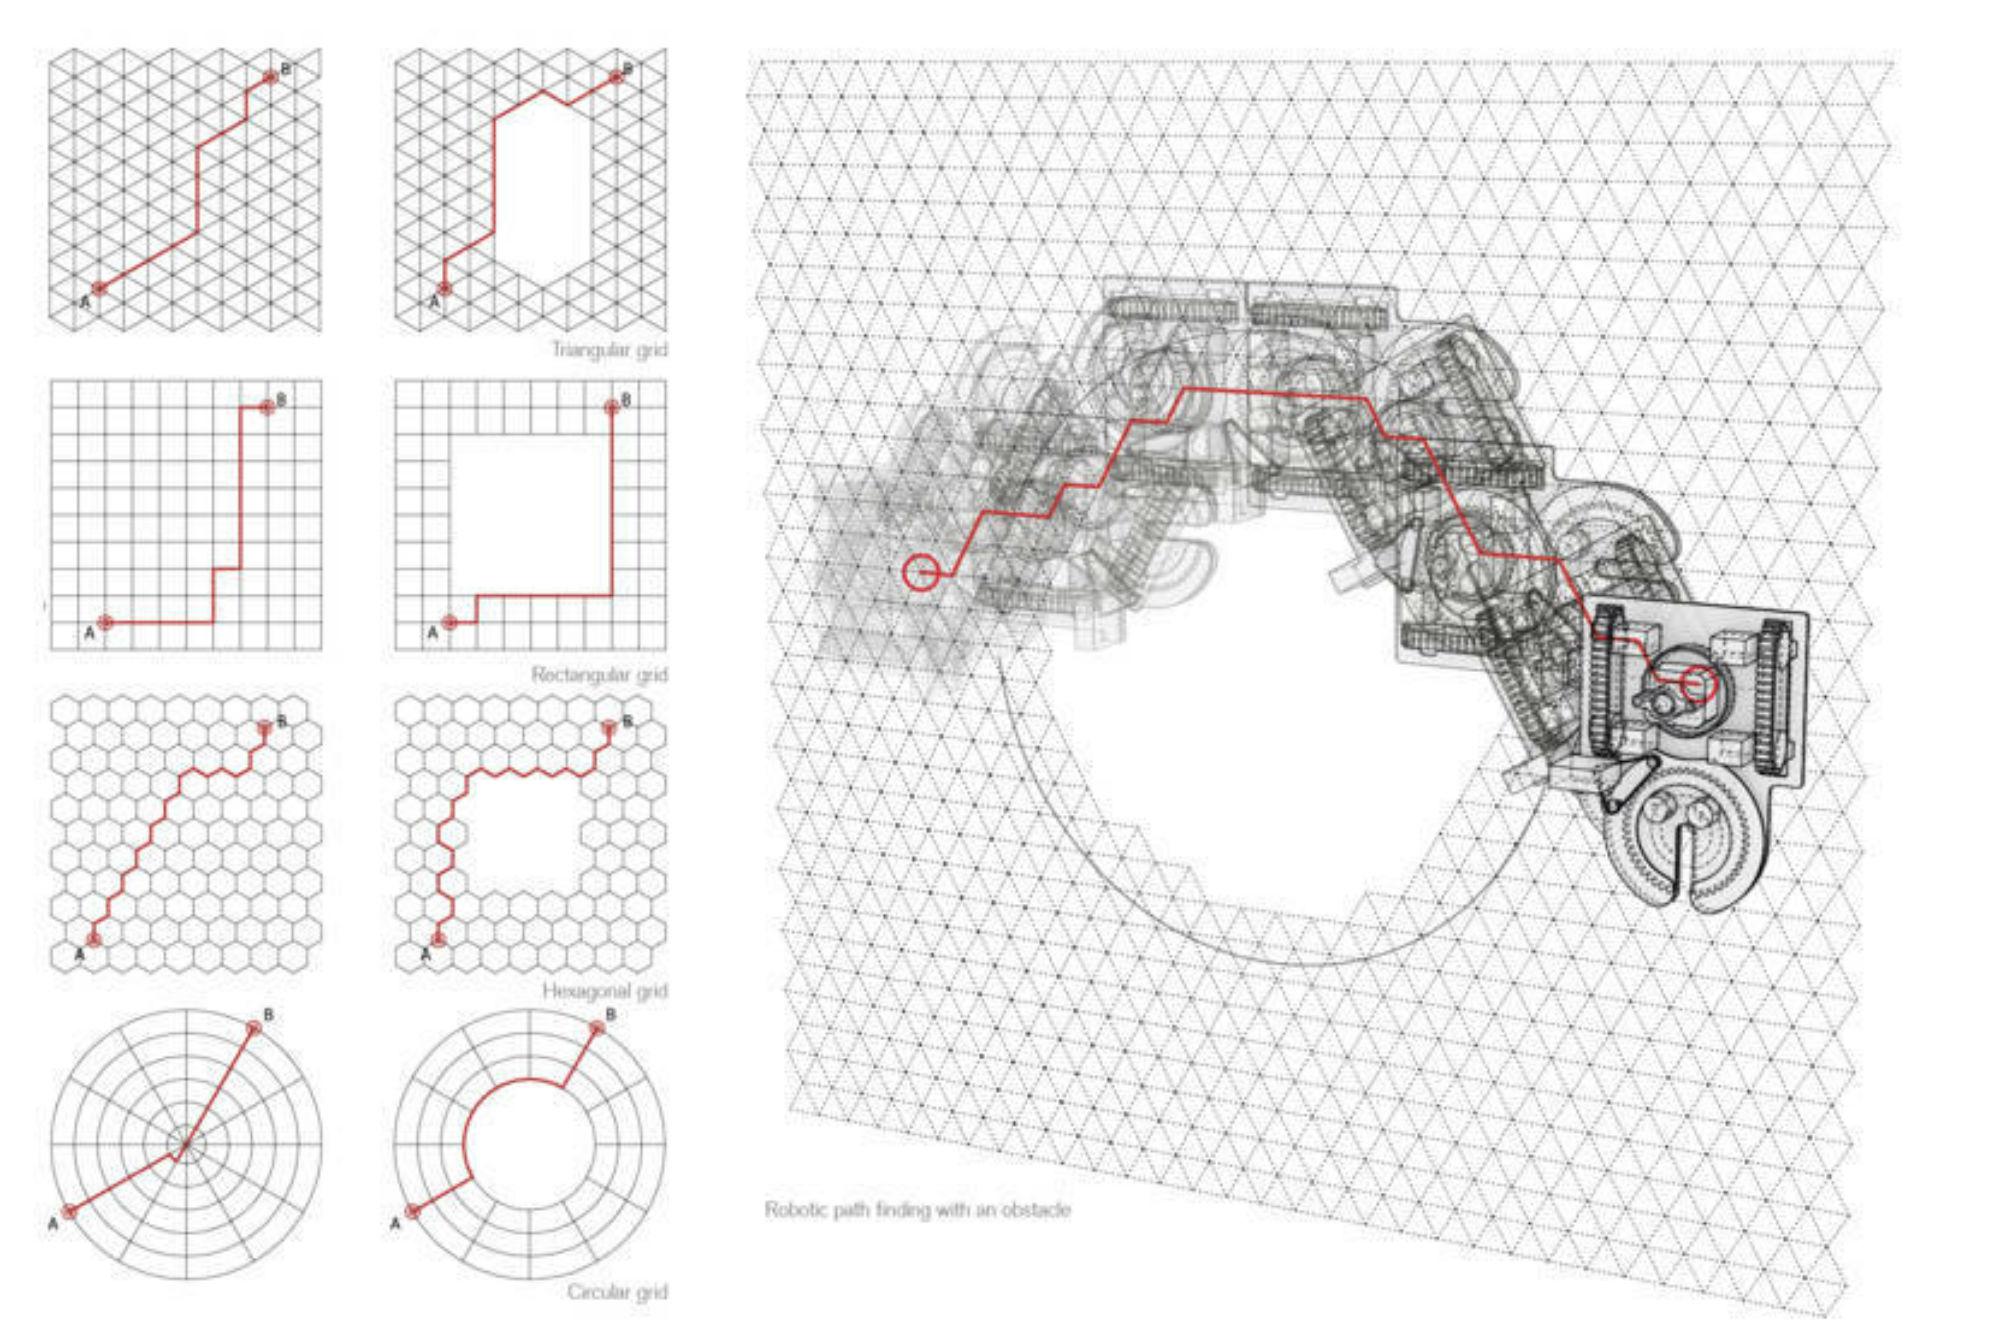 Disegni del progetto di Maria Yablonina 'Mobile Robotic Fabrication Eco-System'